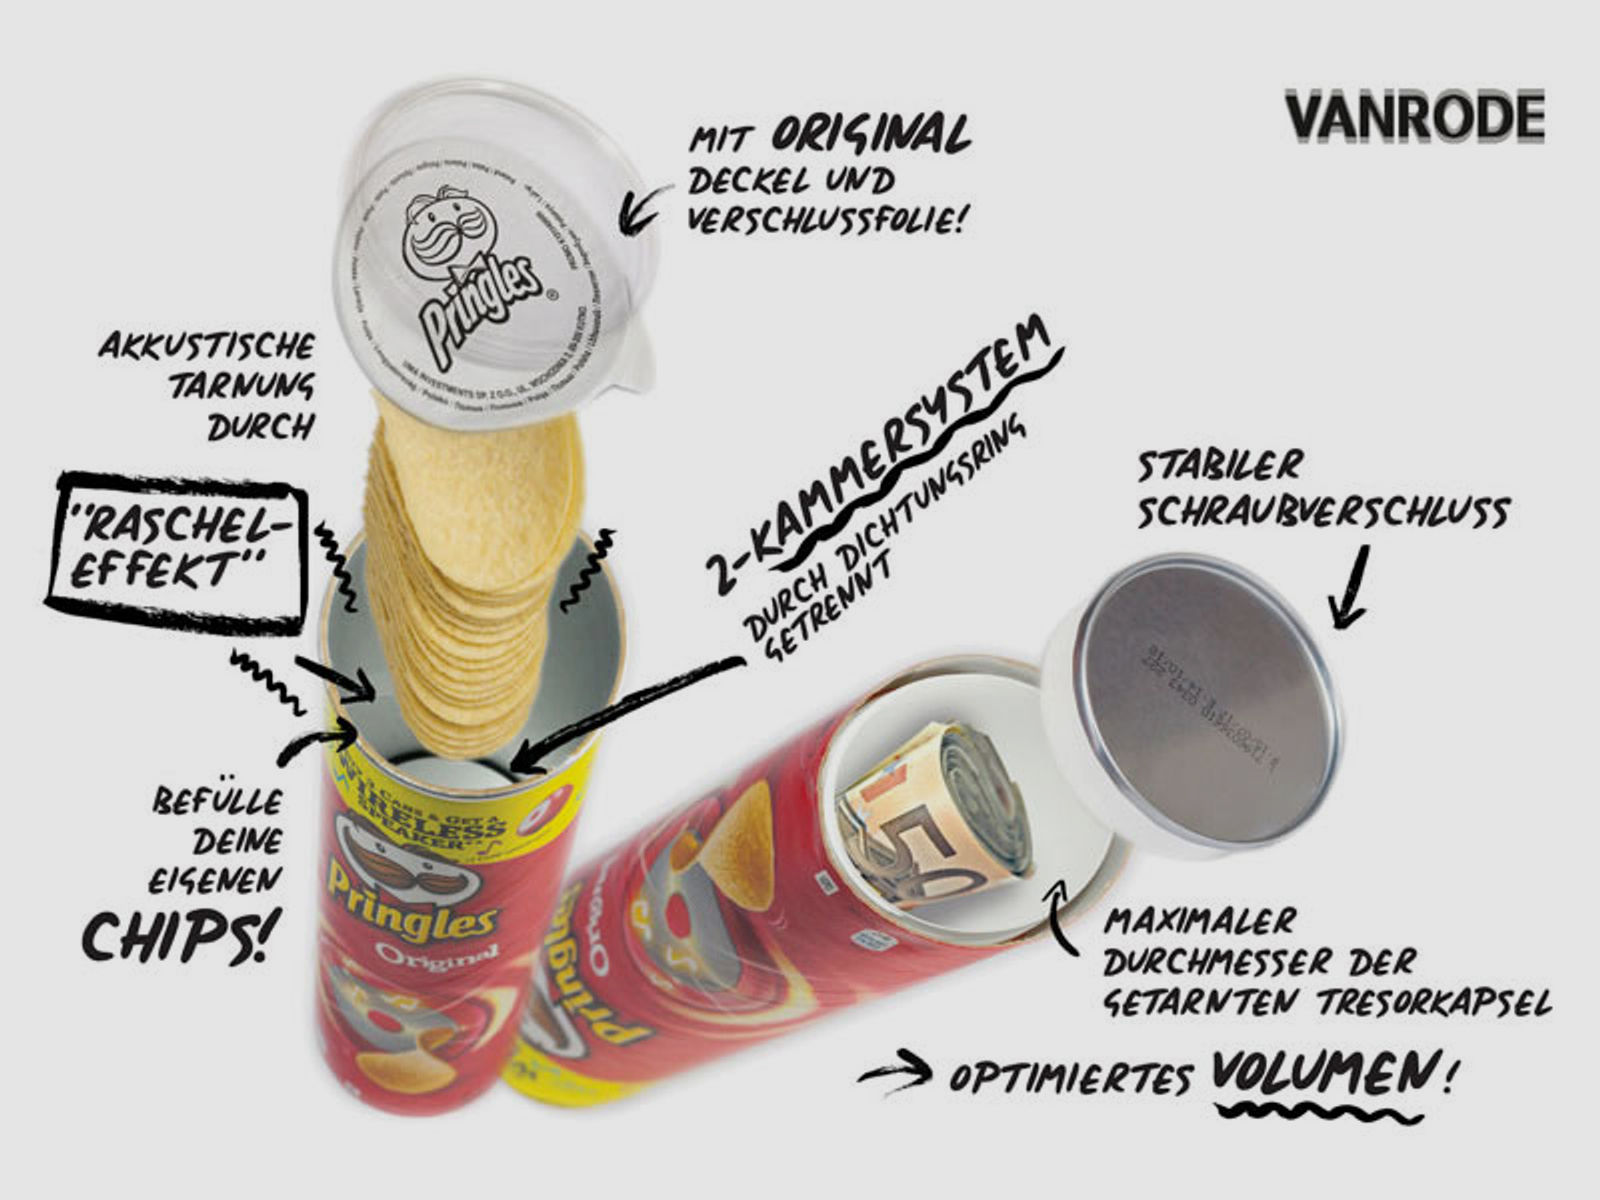 Dosentresor - Dosensafe Pringles Chips Rot, maximiertes Volumen, kann mit echten Chips gefĂĽllt werden